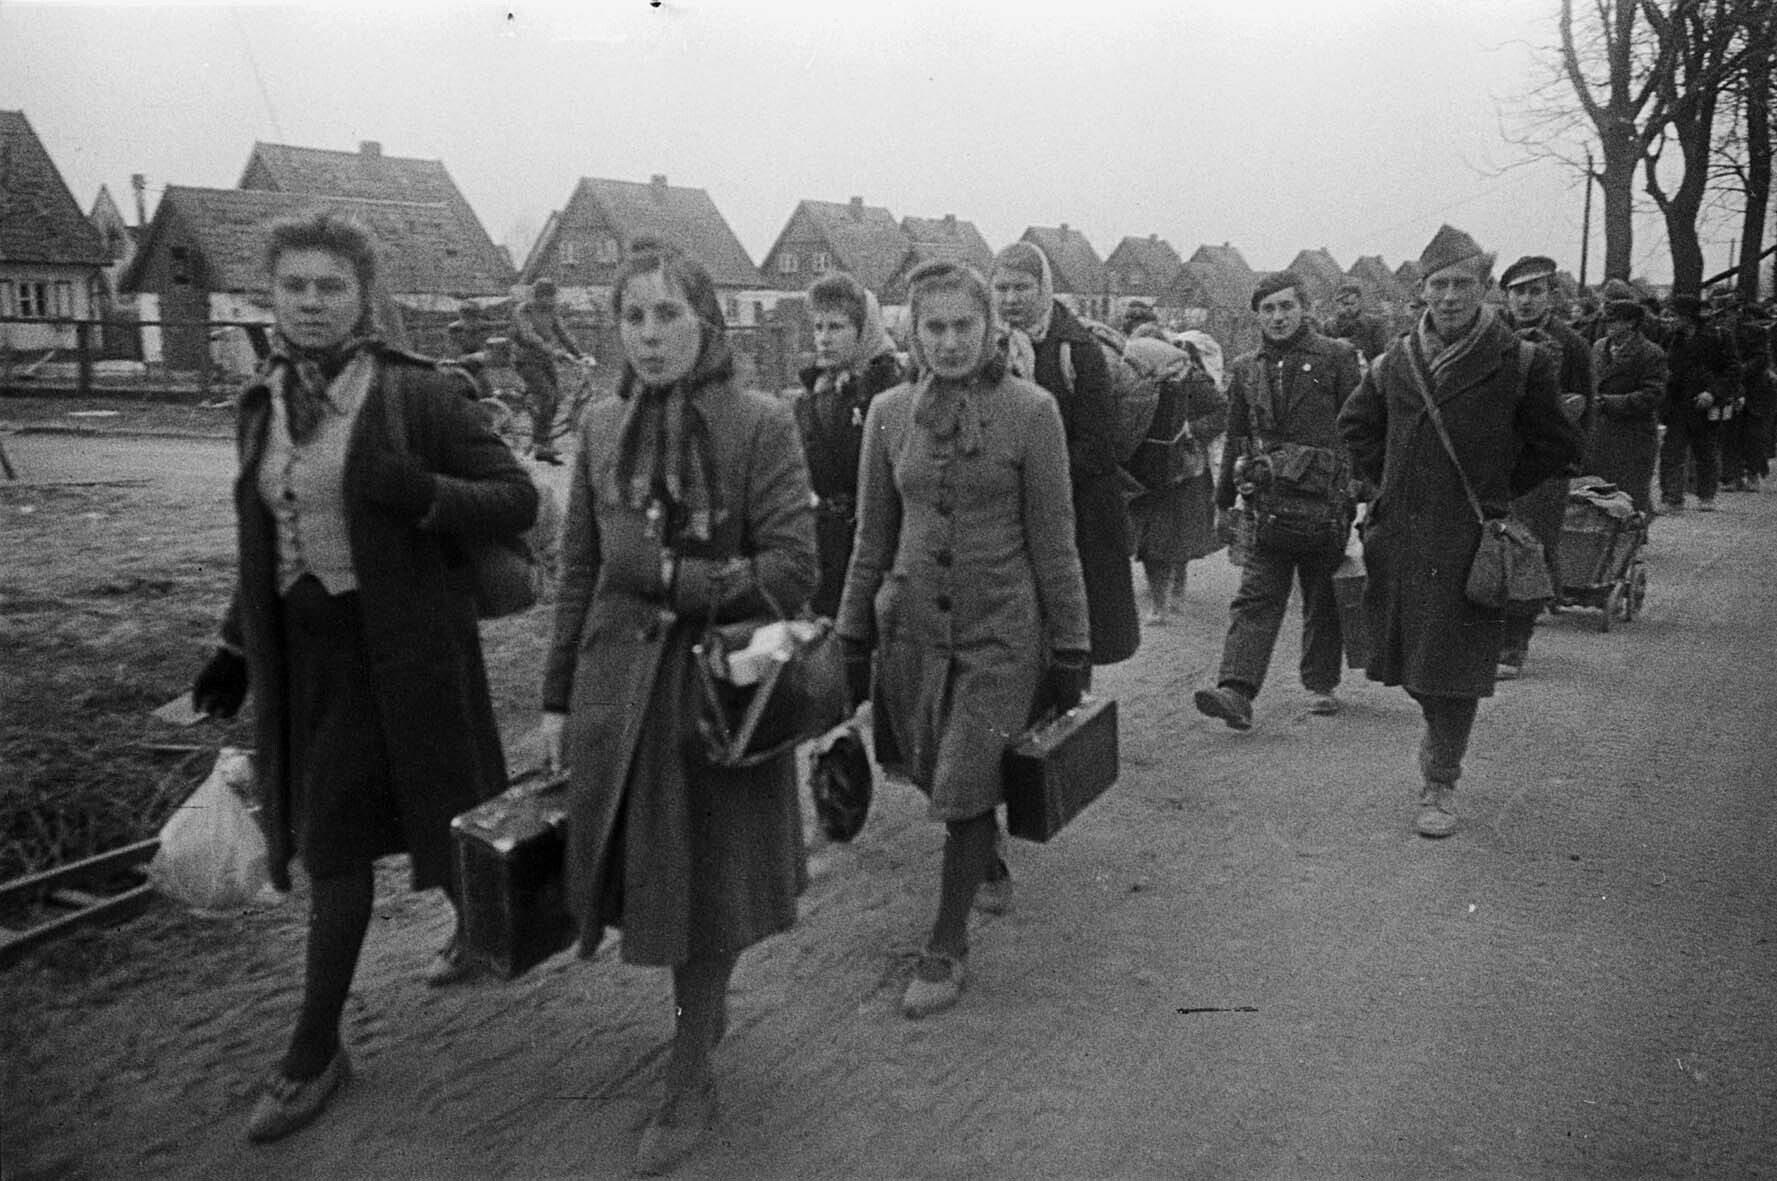 Fotografie: Kolonne von Zivilisten auf einer Landstraße entlang, Ostpreußen, April 1945 (Museum Berlin-Karlshorst RR-P)